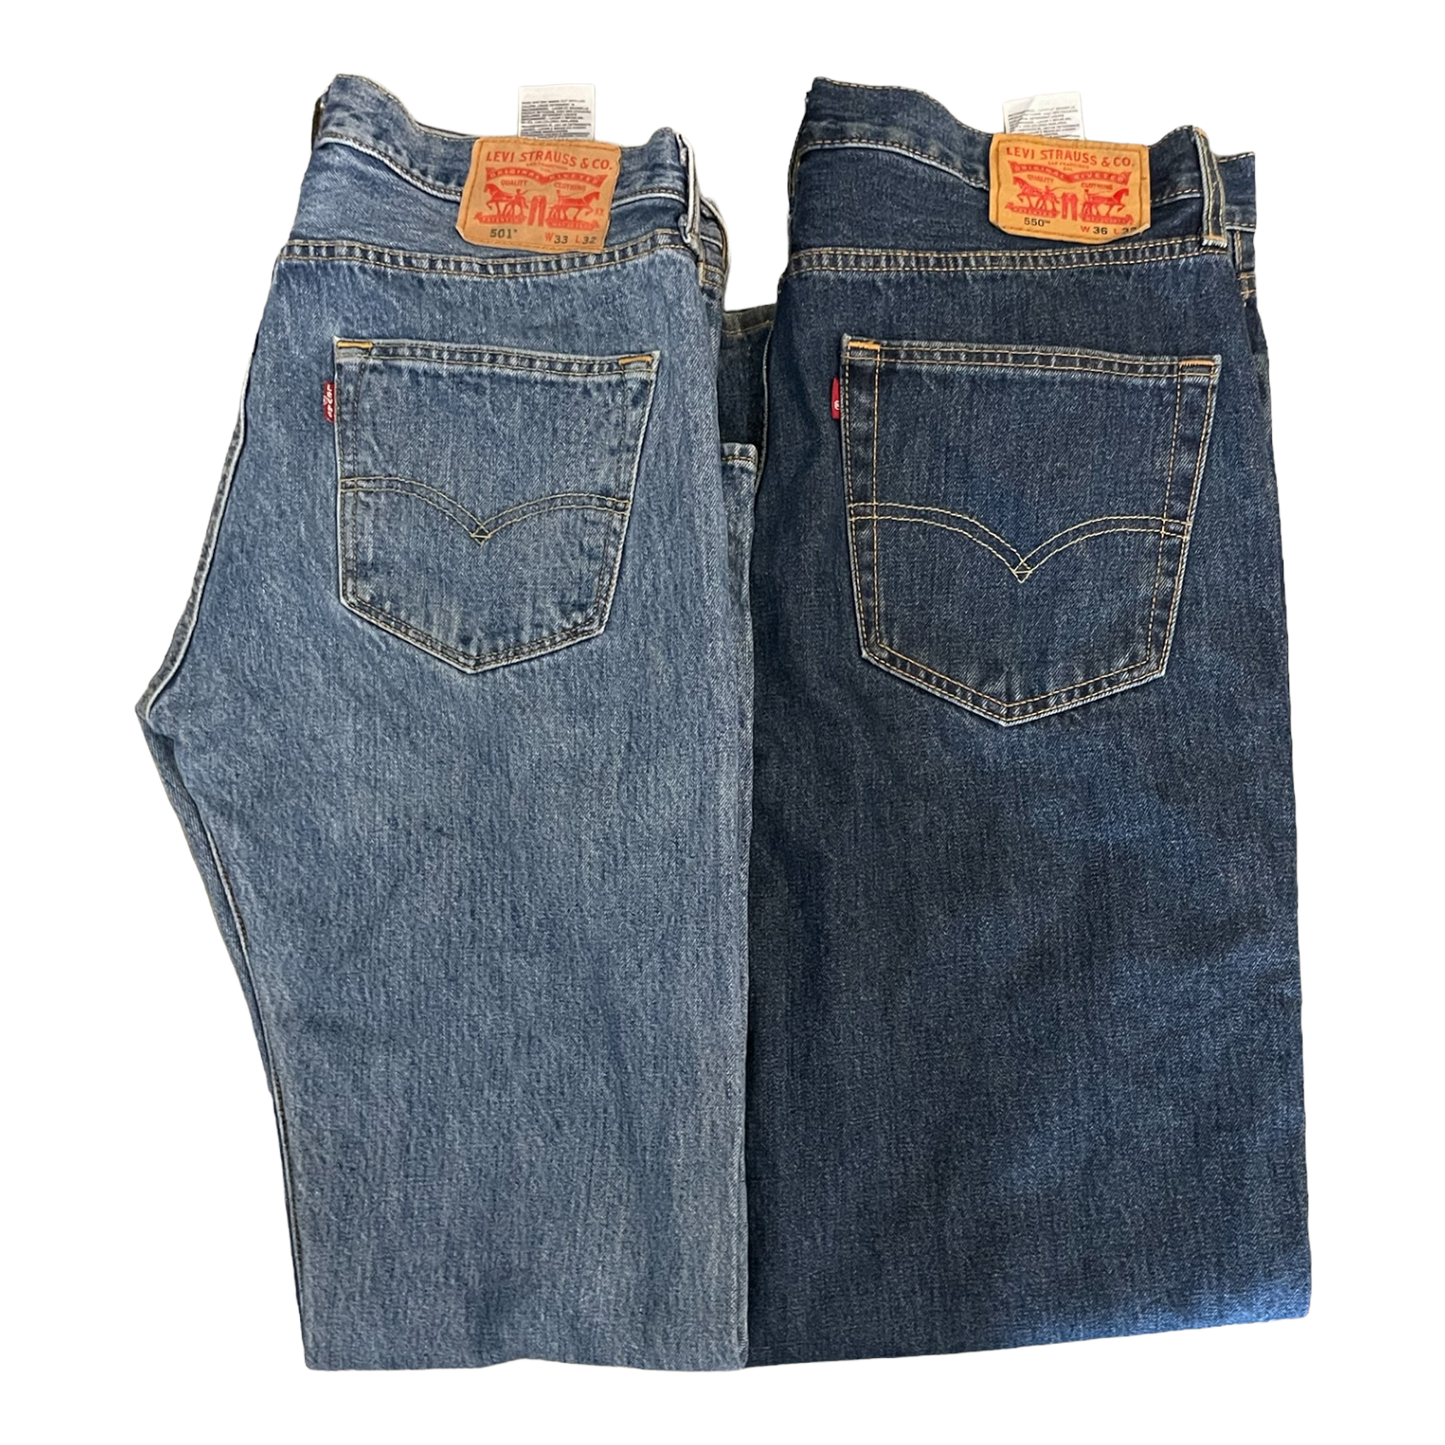 Men's Levi's Jeans Intro Pack – Vintage Wholesale Club